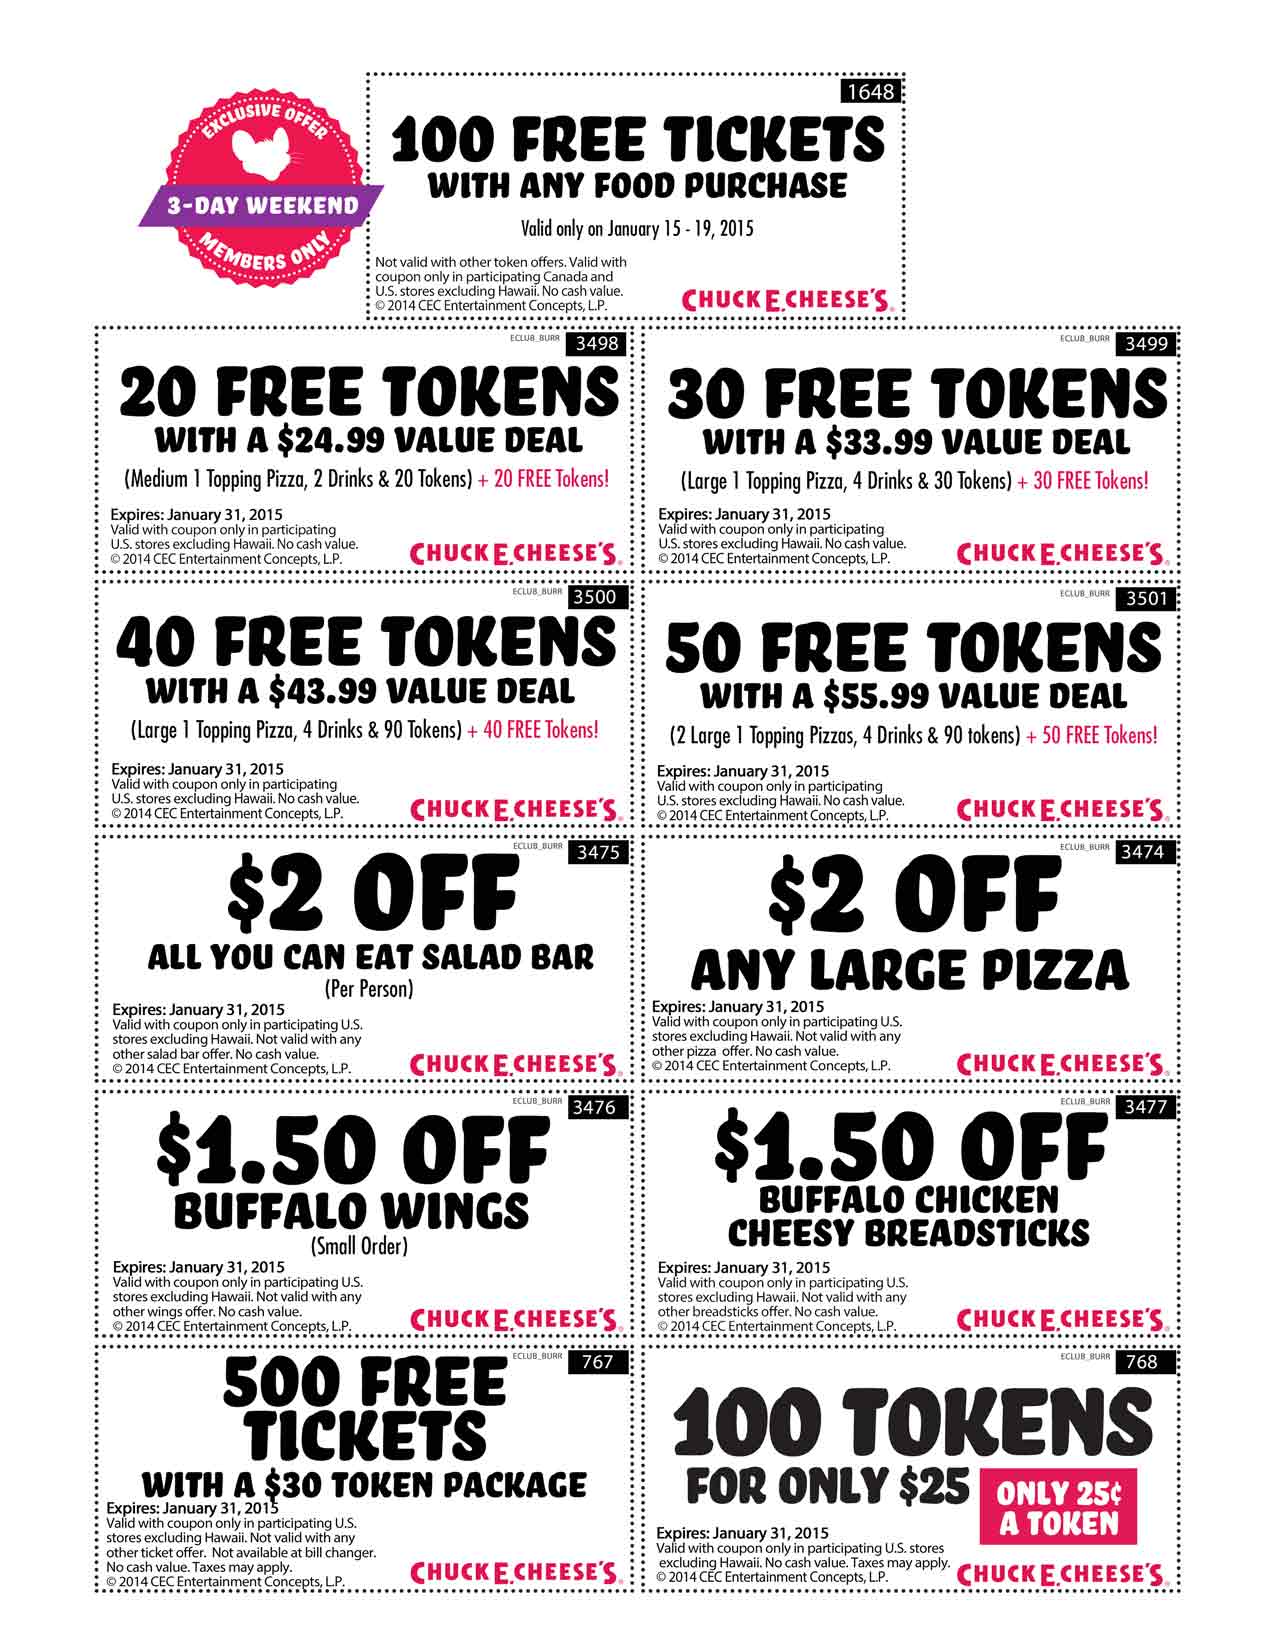 Chuck E Cheese Coupons, printable coupon codes